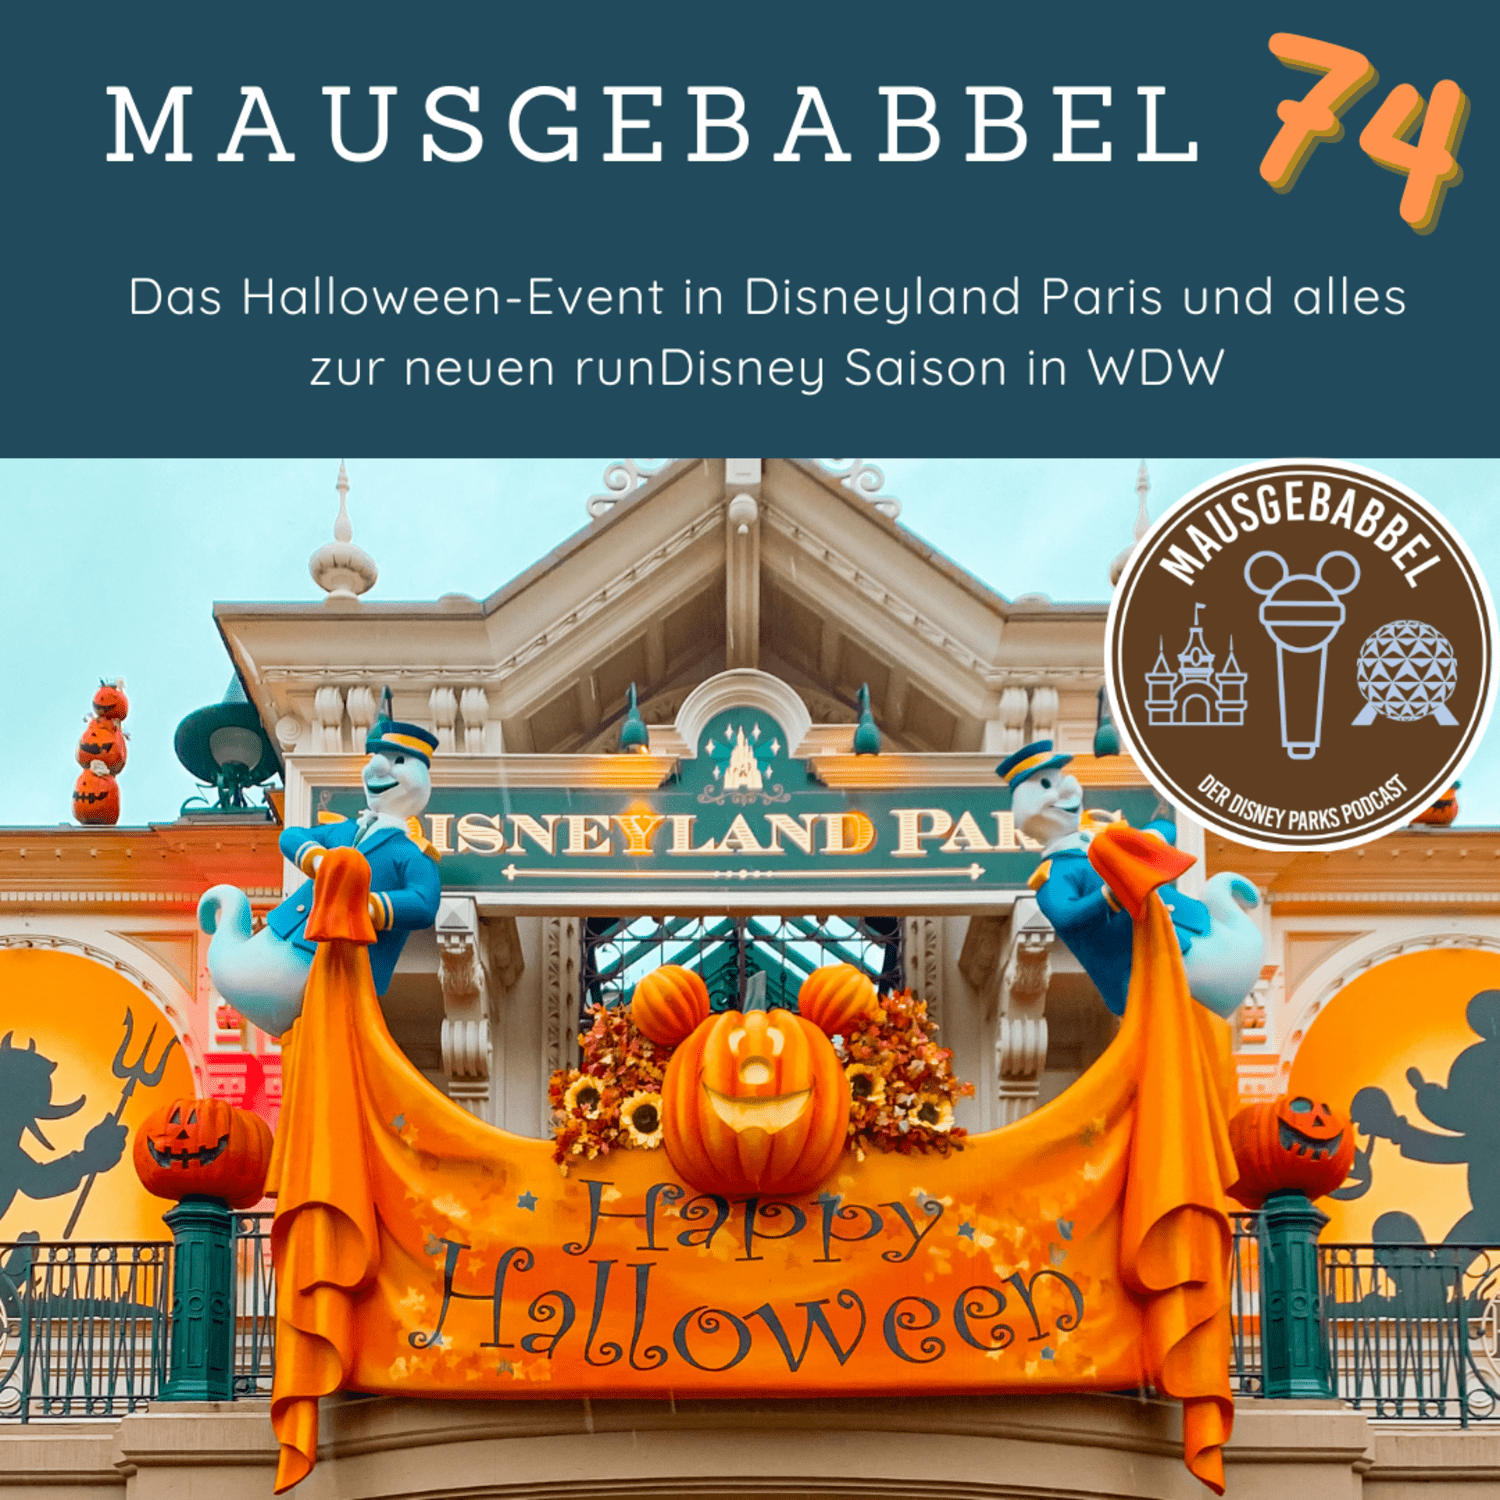 Disneyland Paris Halloween-Event - Mausgebabbel 74